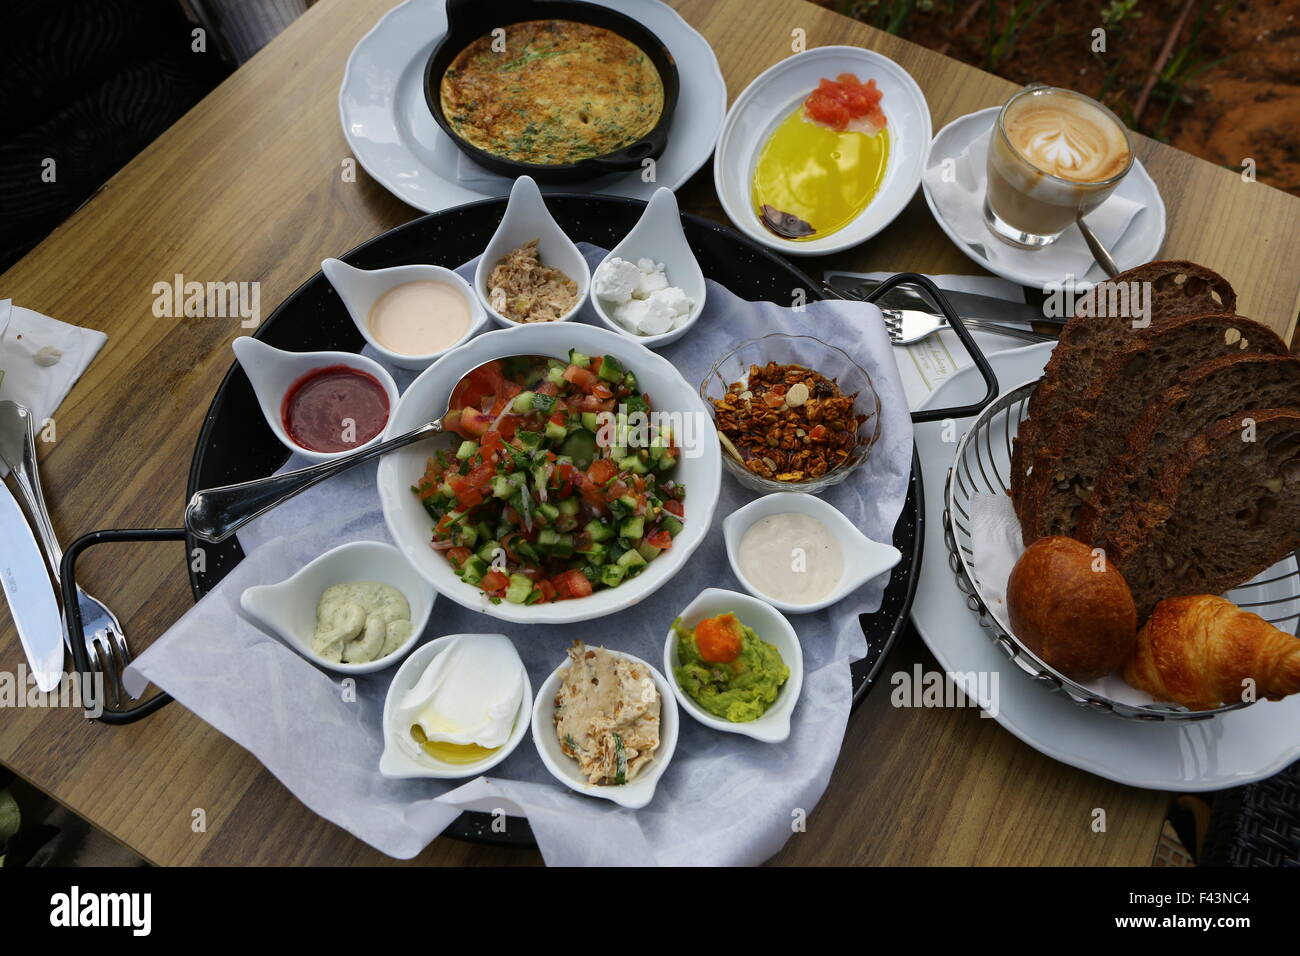 Tradizionale colazione israeliana con la frittata, formaggi, insalate, un rotolo di fresco e una tazza di cappuccino Foto Stock